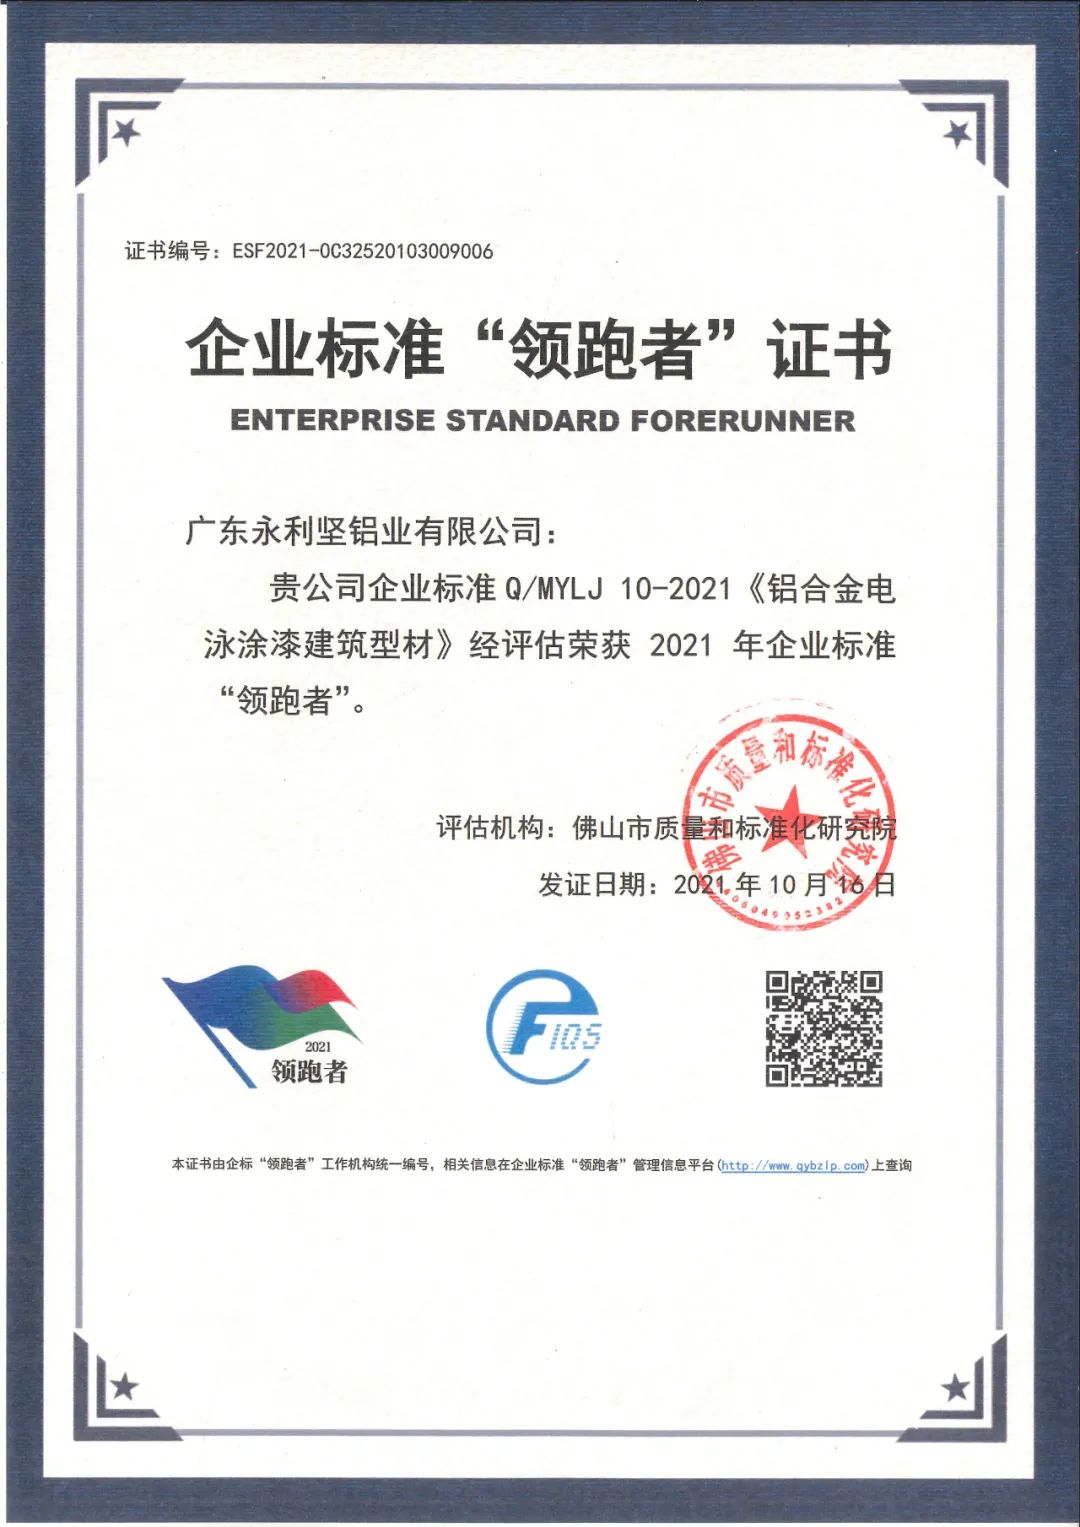 永利坚铝业获得全国企业标准“领跑者”荣誉称号